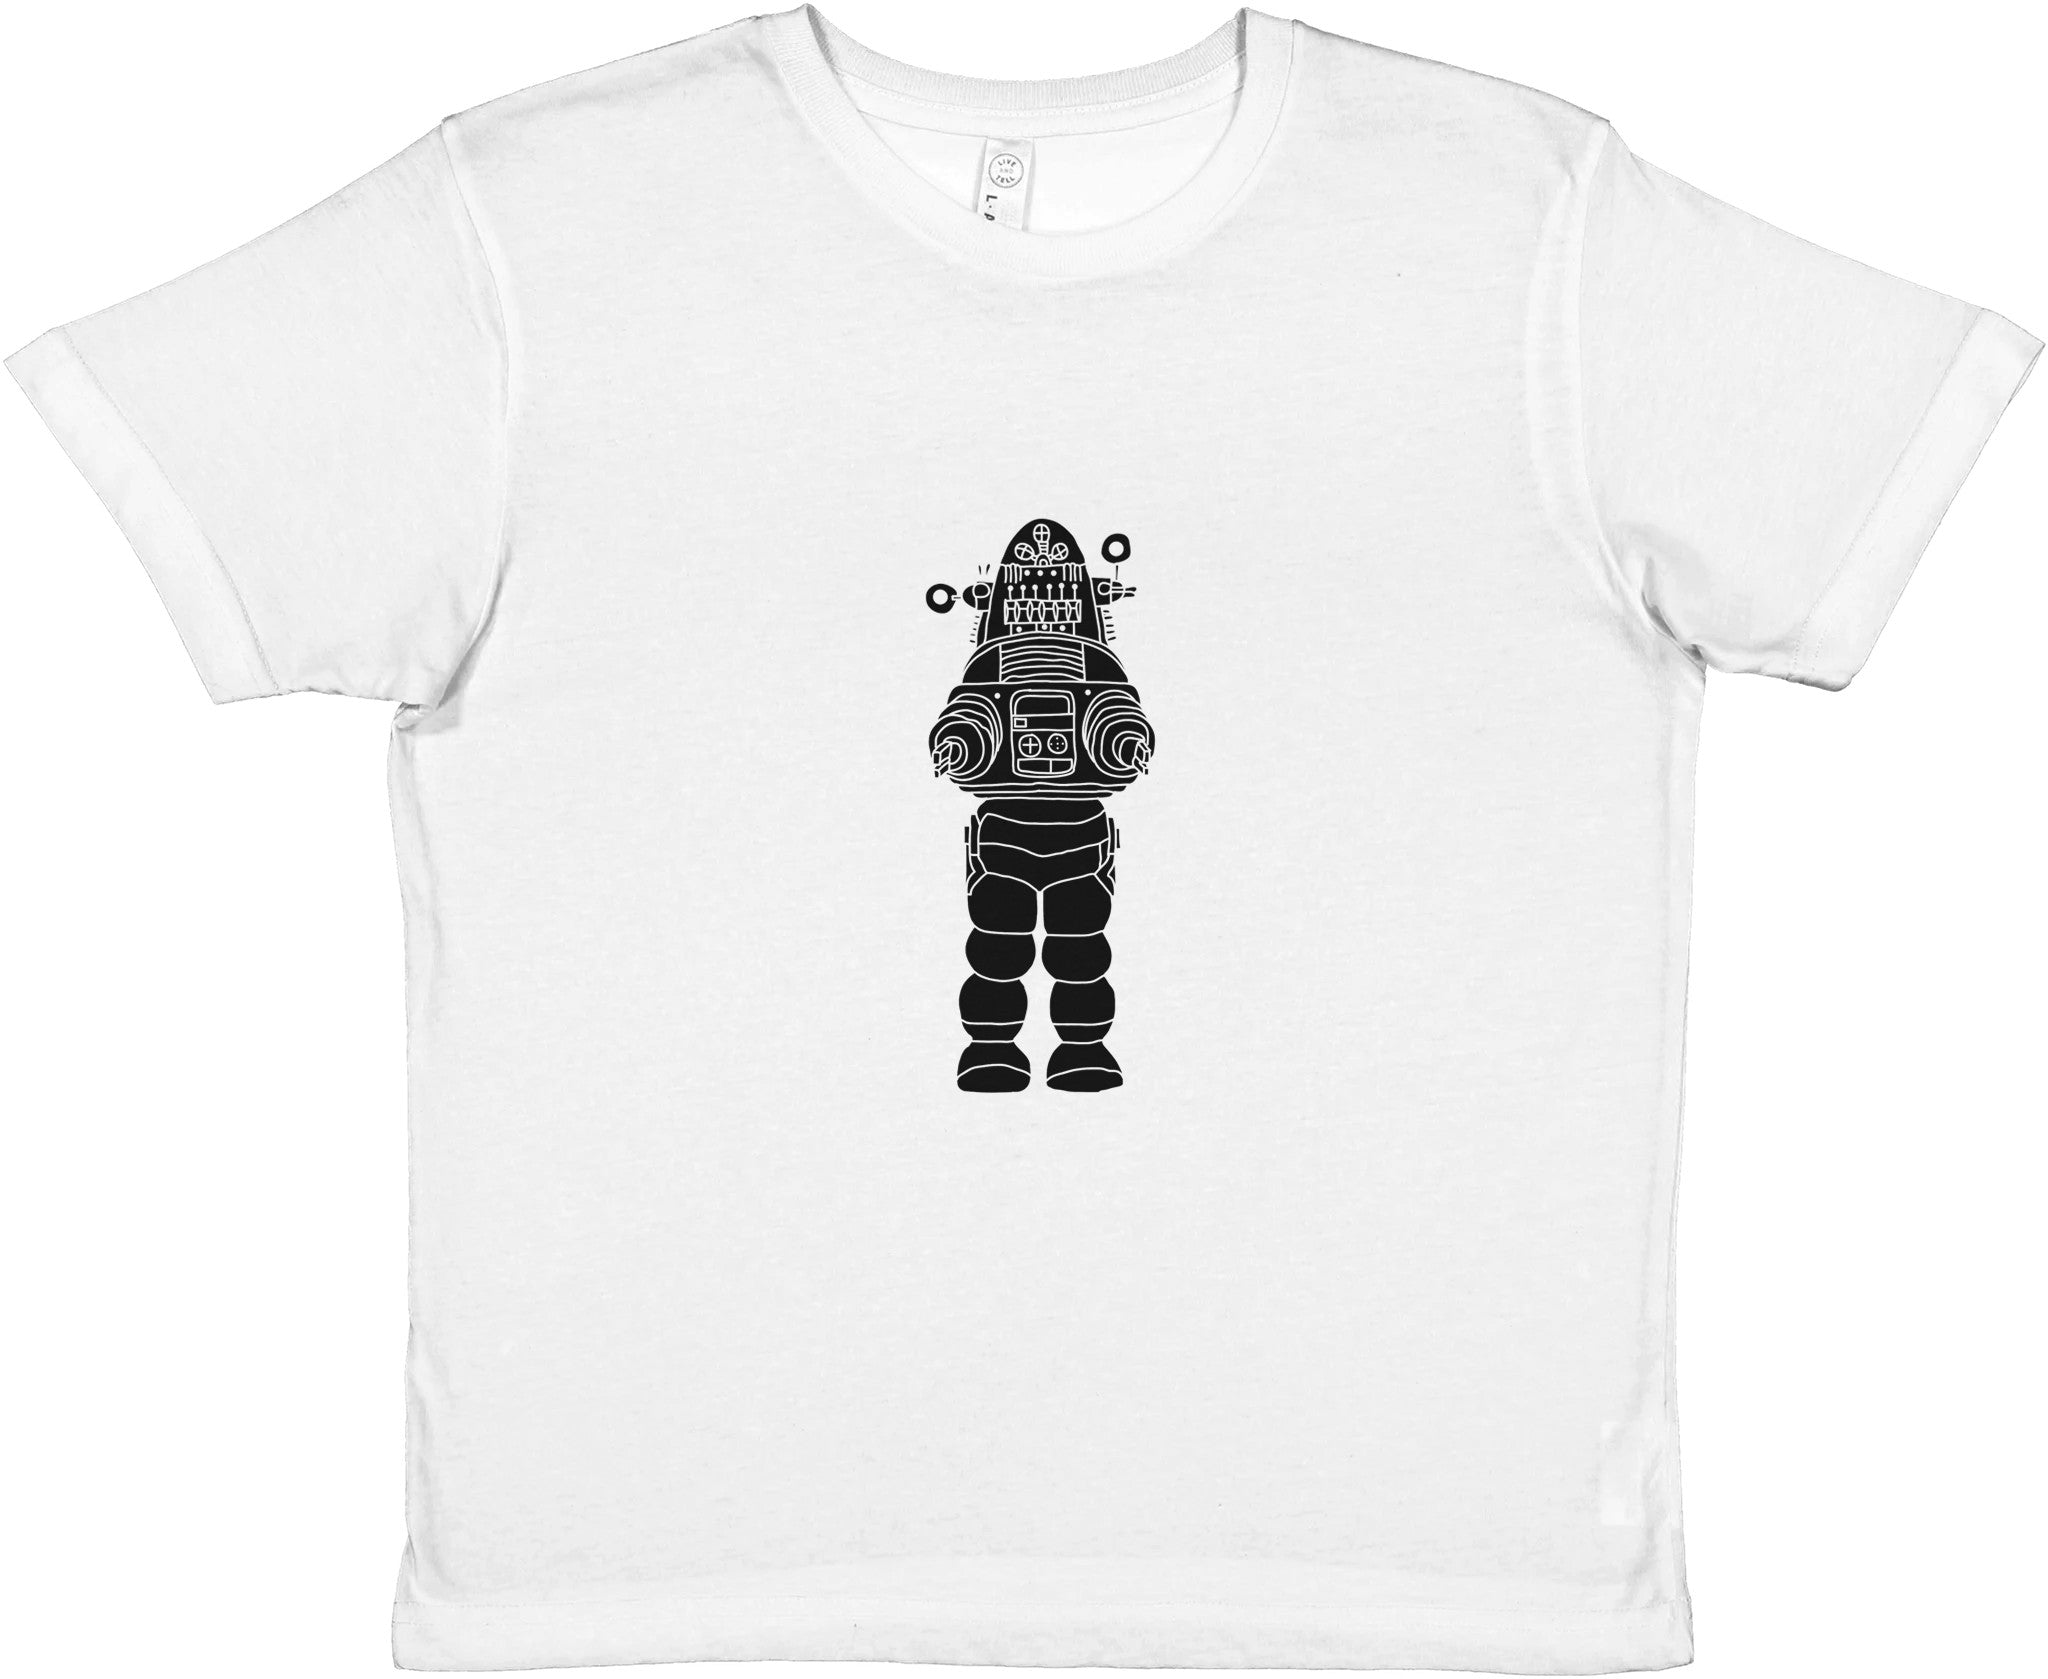 ROBOT UPRISING Kids Crewneck T-shirt - Optimalprint